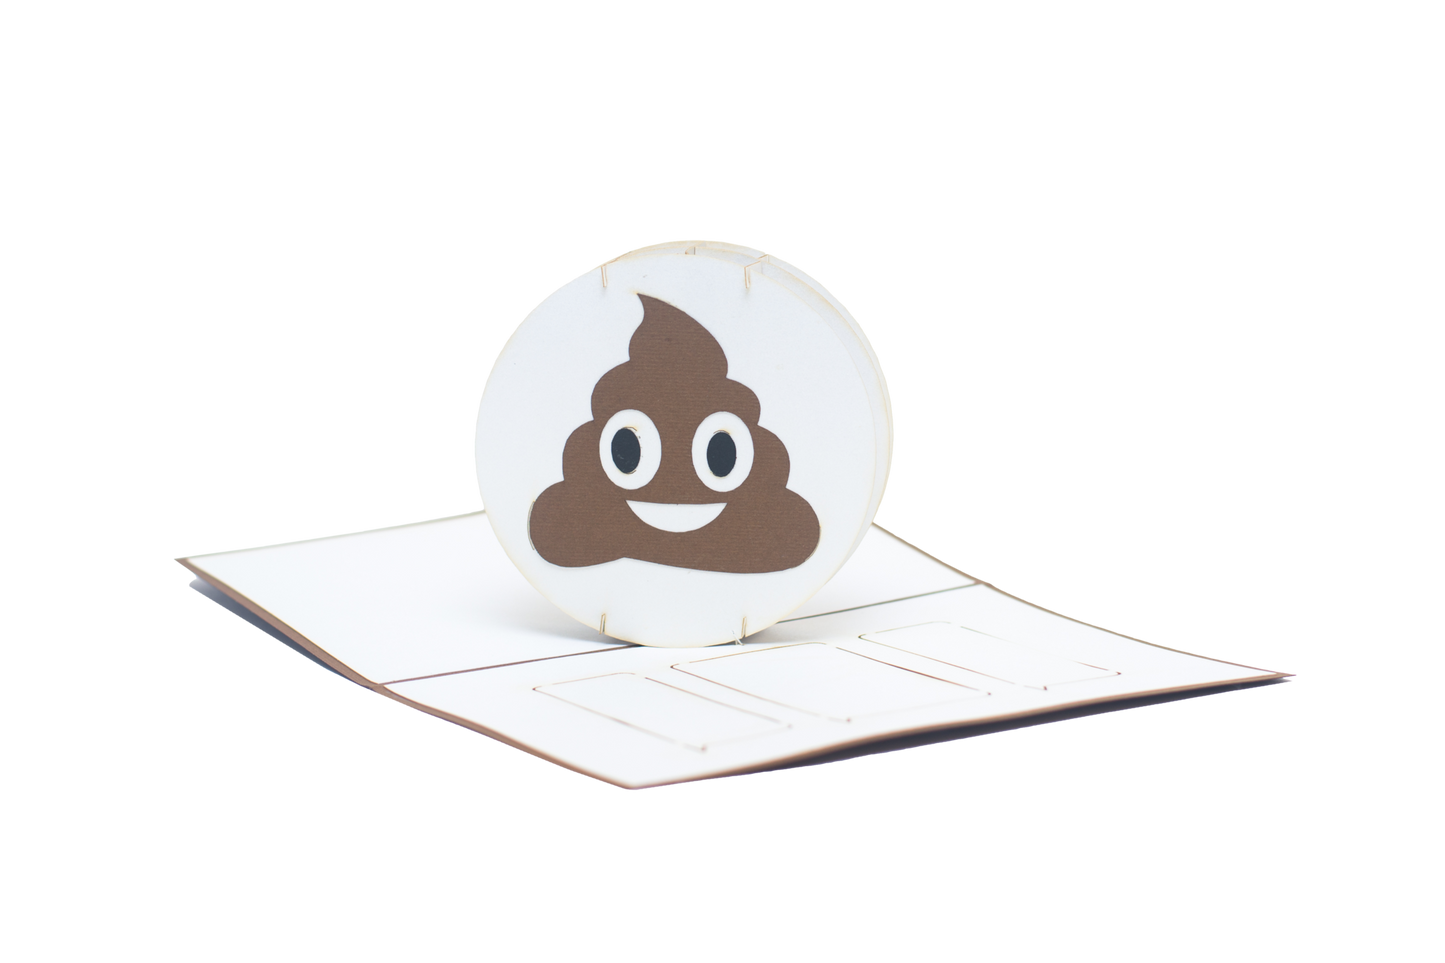 Pop-up card with smiling poop emoji